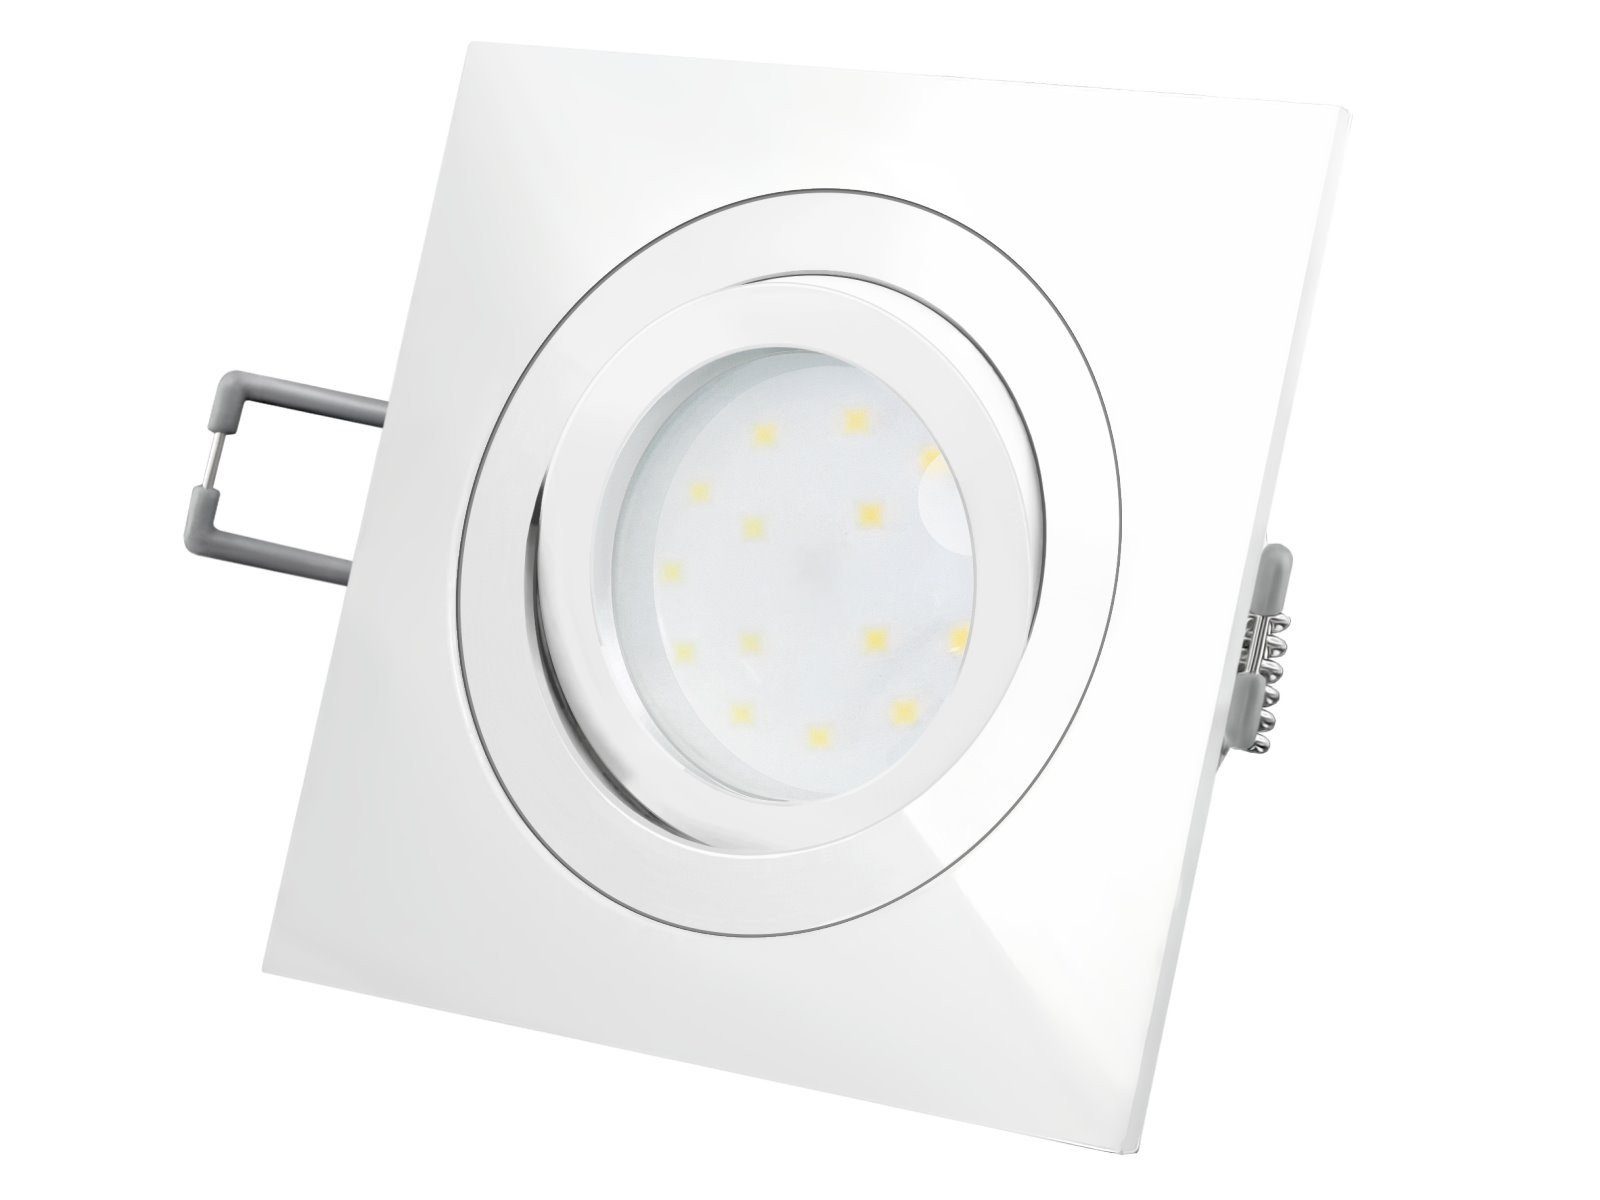 SSC-LUXon LED Einbaustrahler QF-2 LED-Einbauleuchte weiss, flach und schwenkbar mit LED-Modul 230V, Warmweiß